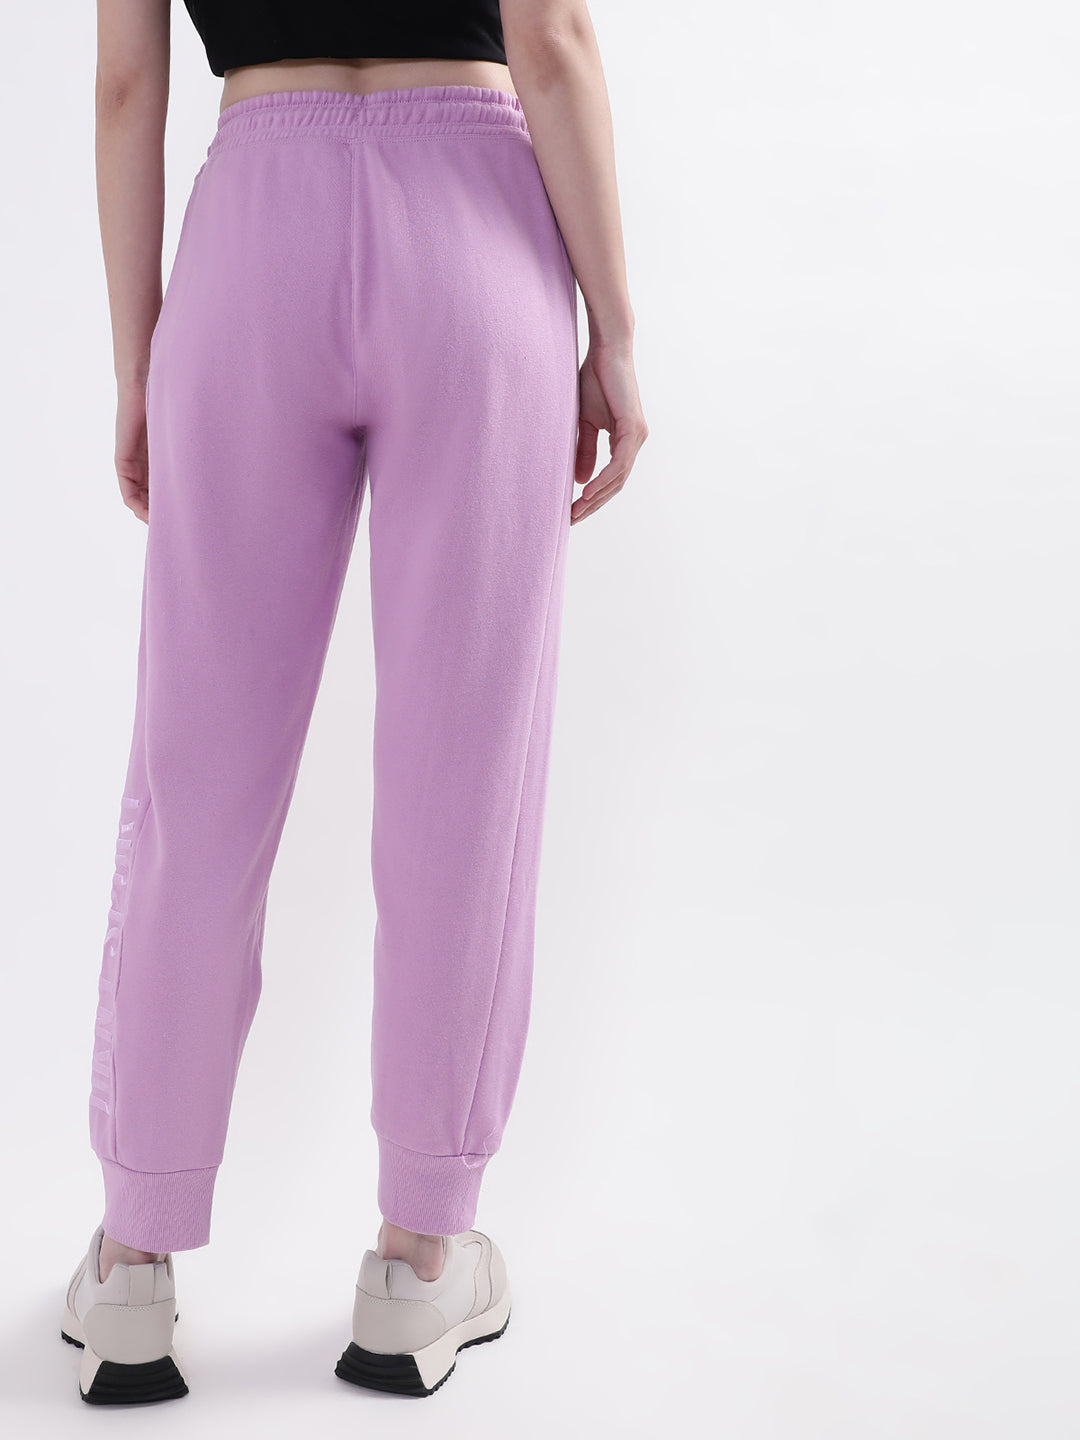 DKNY Women Purple Sweat Pants